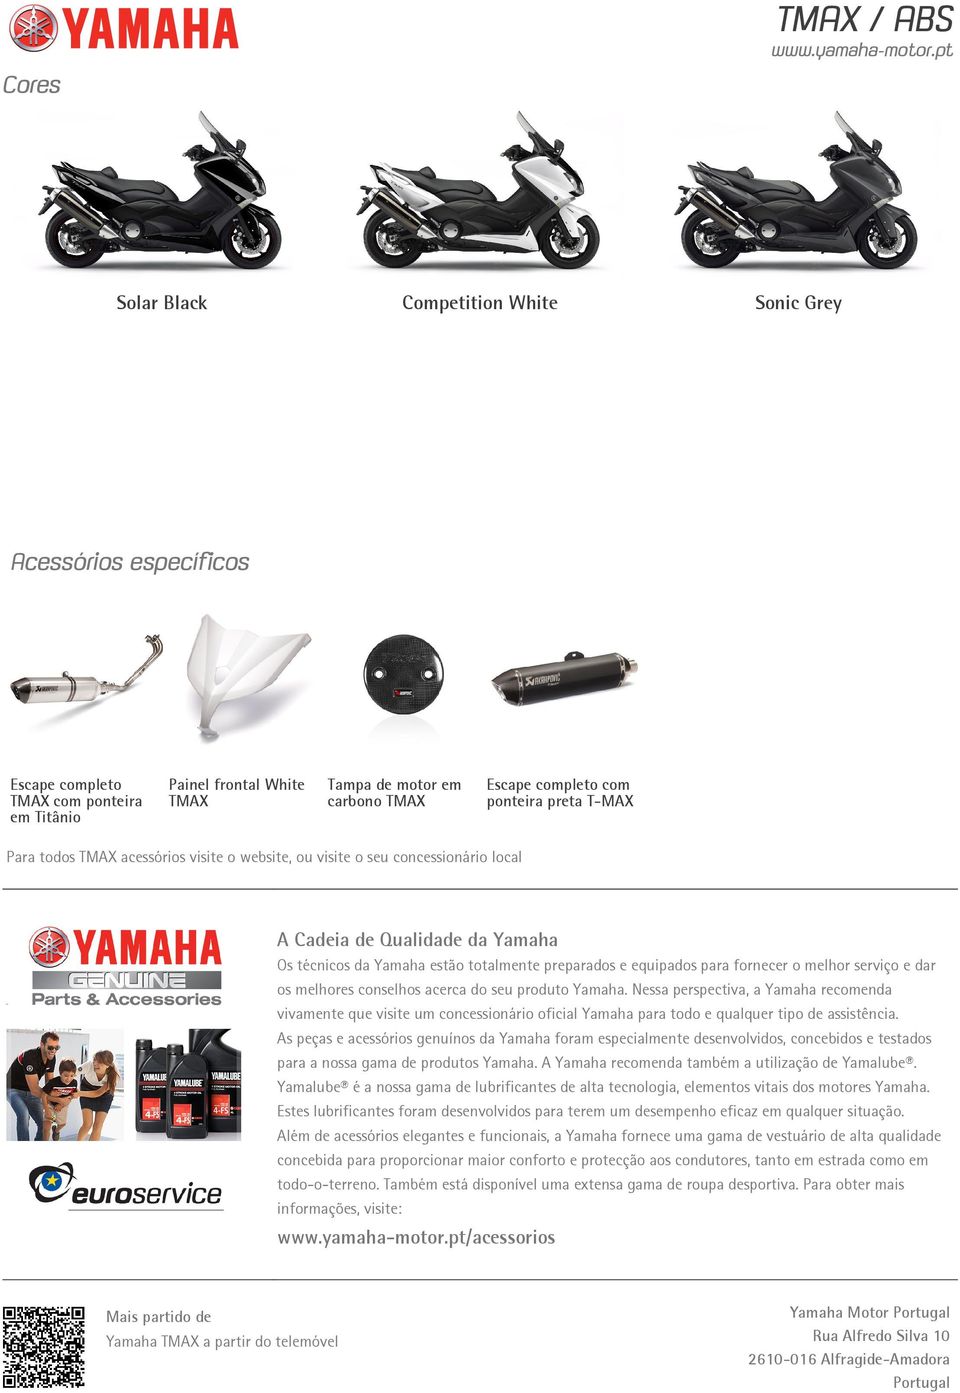 para fornecer o melhor serviço e dar os melhores conselhos acerca do seu produto Yamaha.